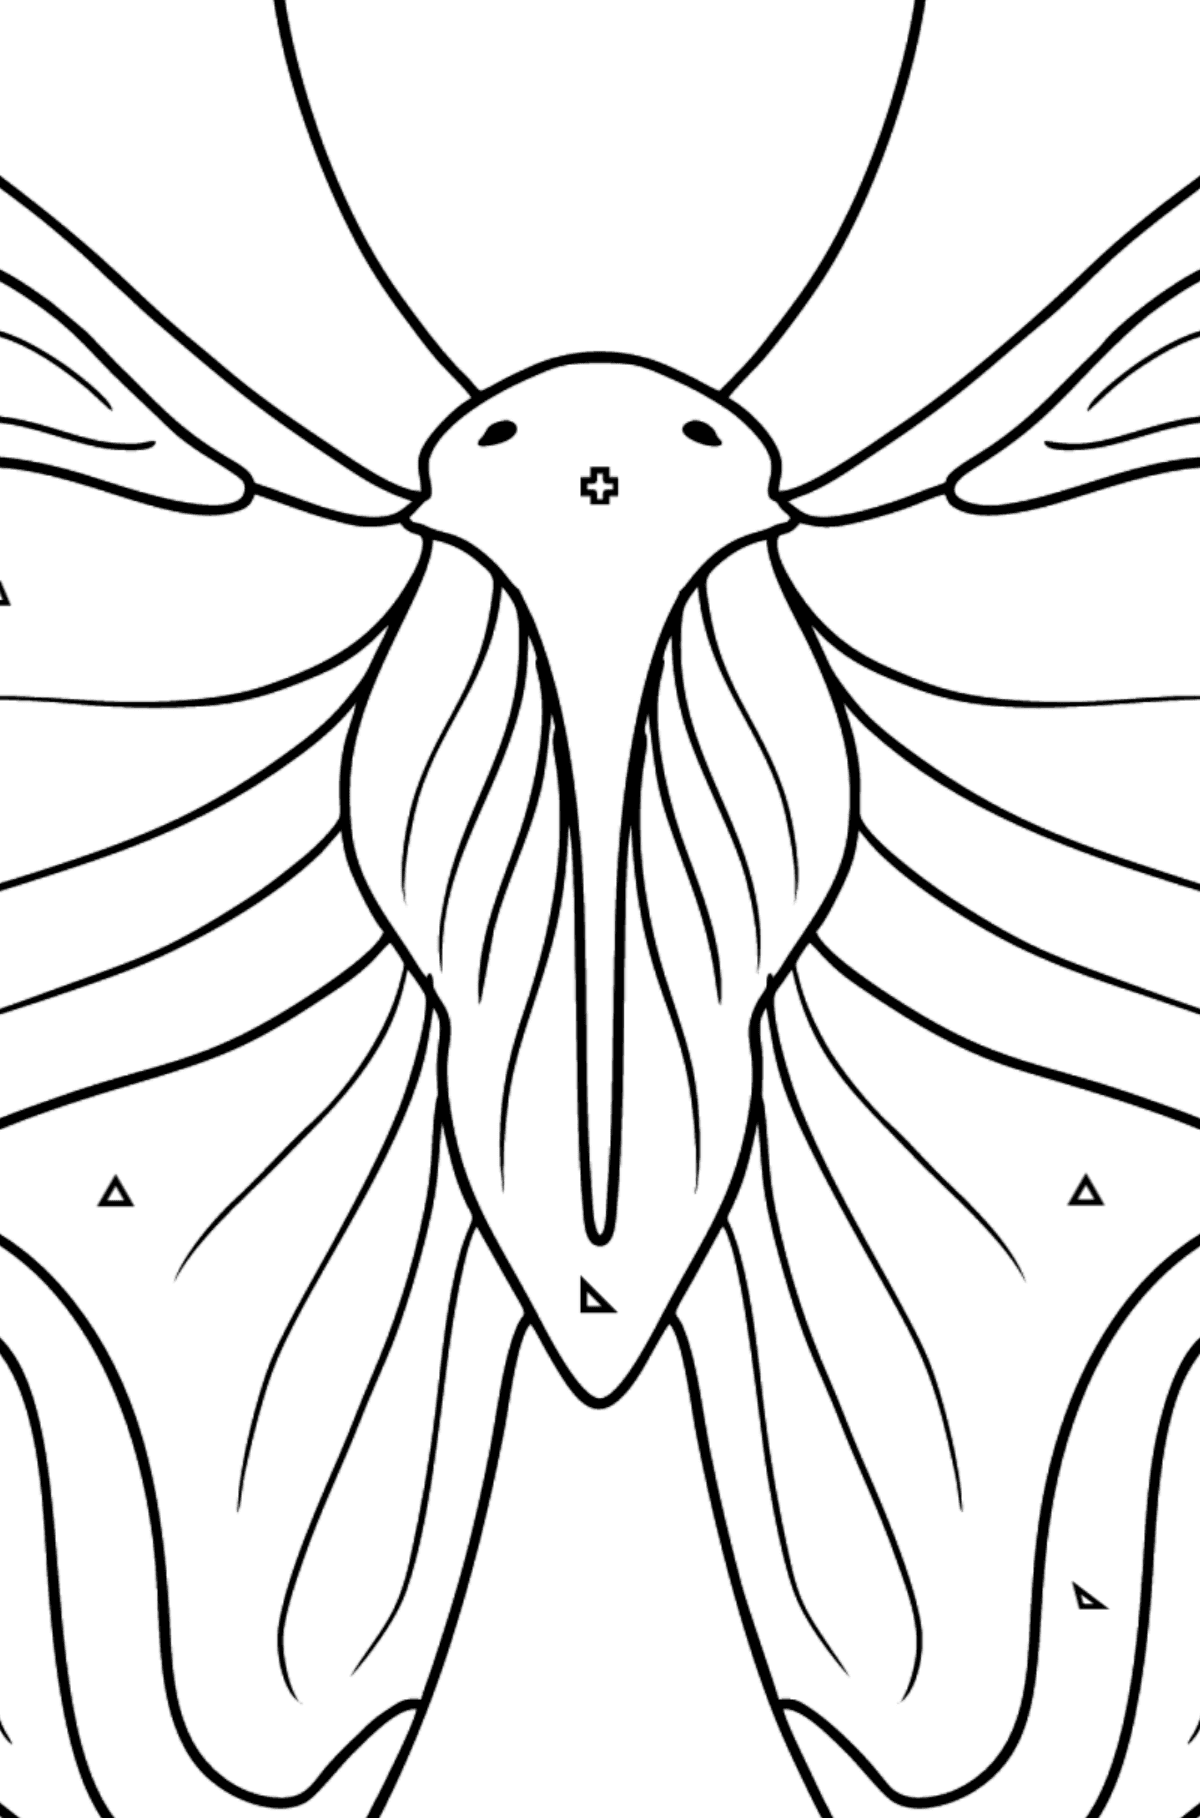 Dibujo de Almirante Butterfly para colorear - Colorear por Formas Geométricas para Niños